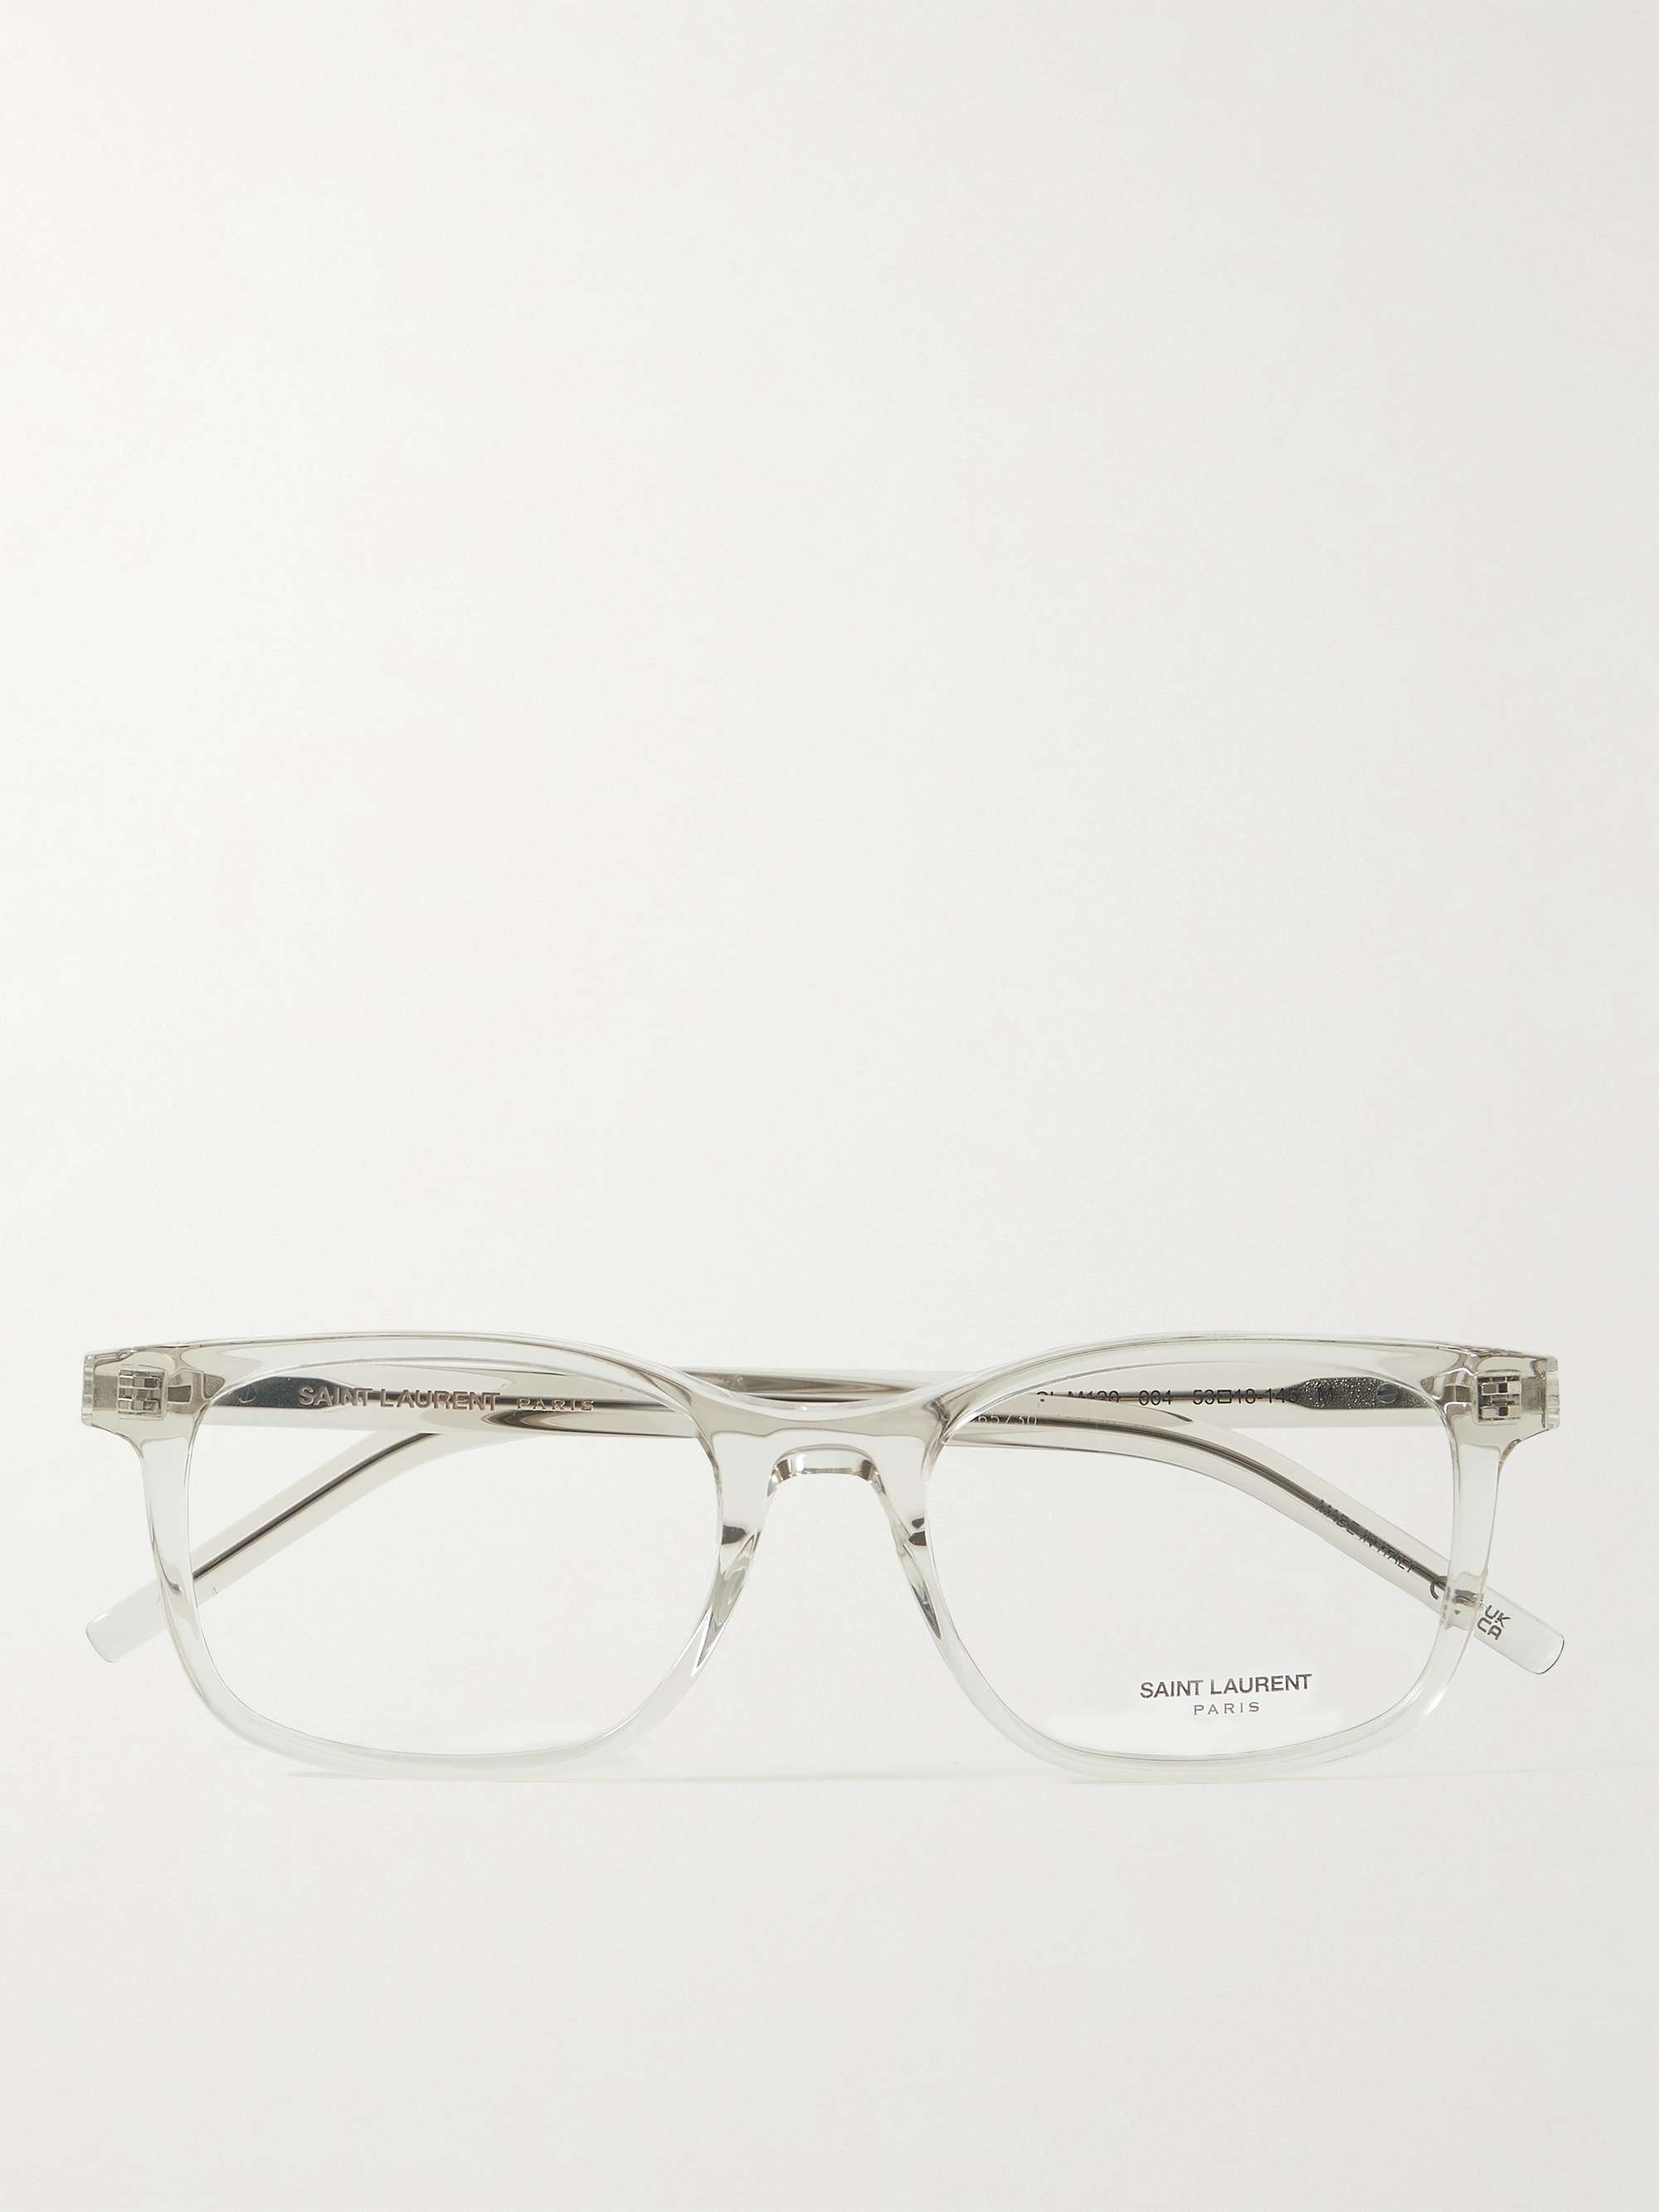 SAINT LAURENT EYEWEAR D-Frame Acetate Optical Glasses for Men | MR PORTER